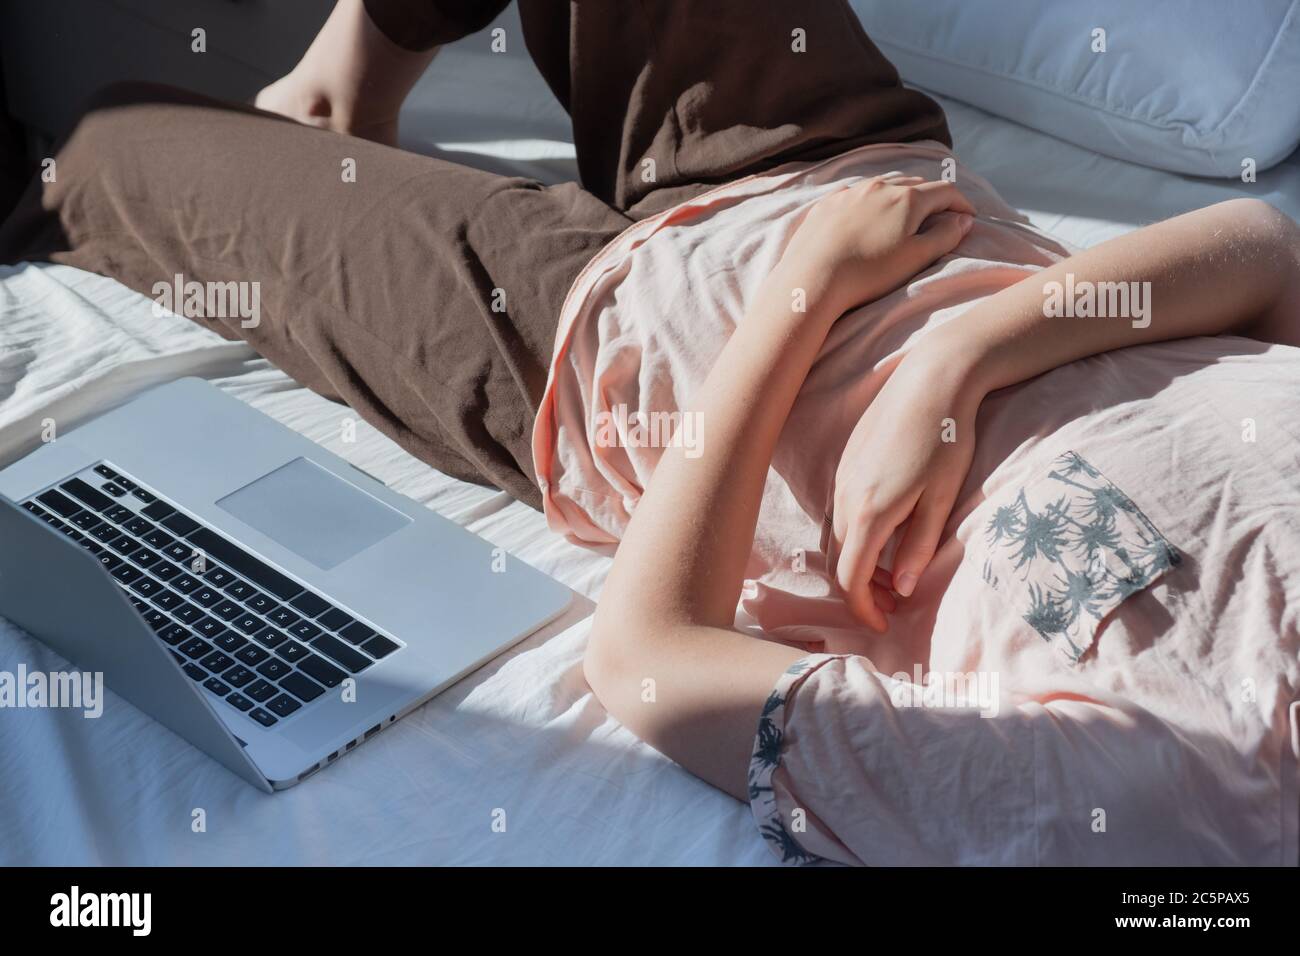 Verzögern, Ausruhen von der Arbeit: Eine Frau ruht im Bett neben einem Computer. Konzept der Remote-Arbeit, nicht in der Lage, produktiv zu sein, faul zu arbeiten Stockfoto